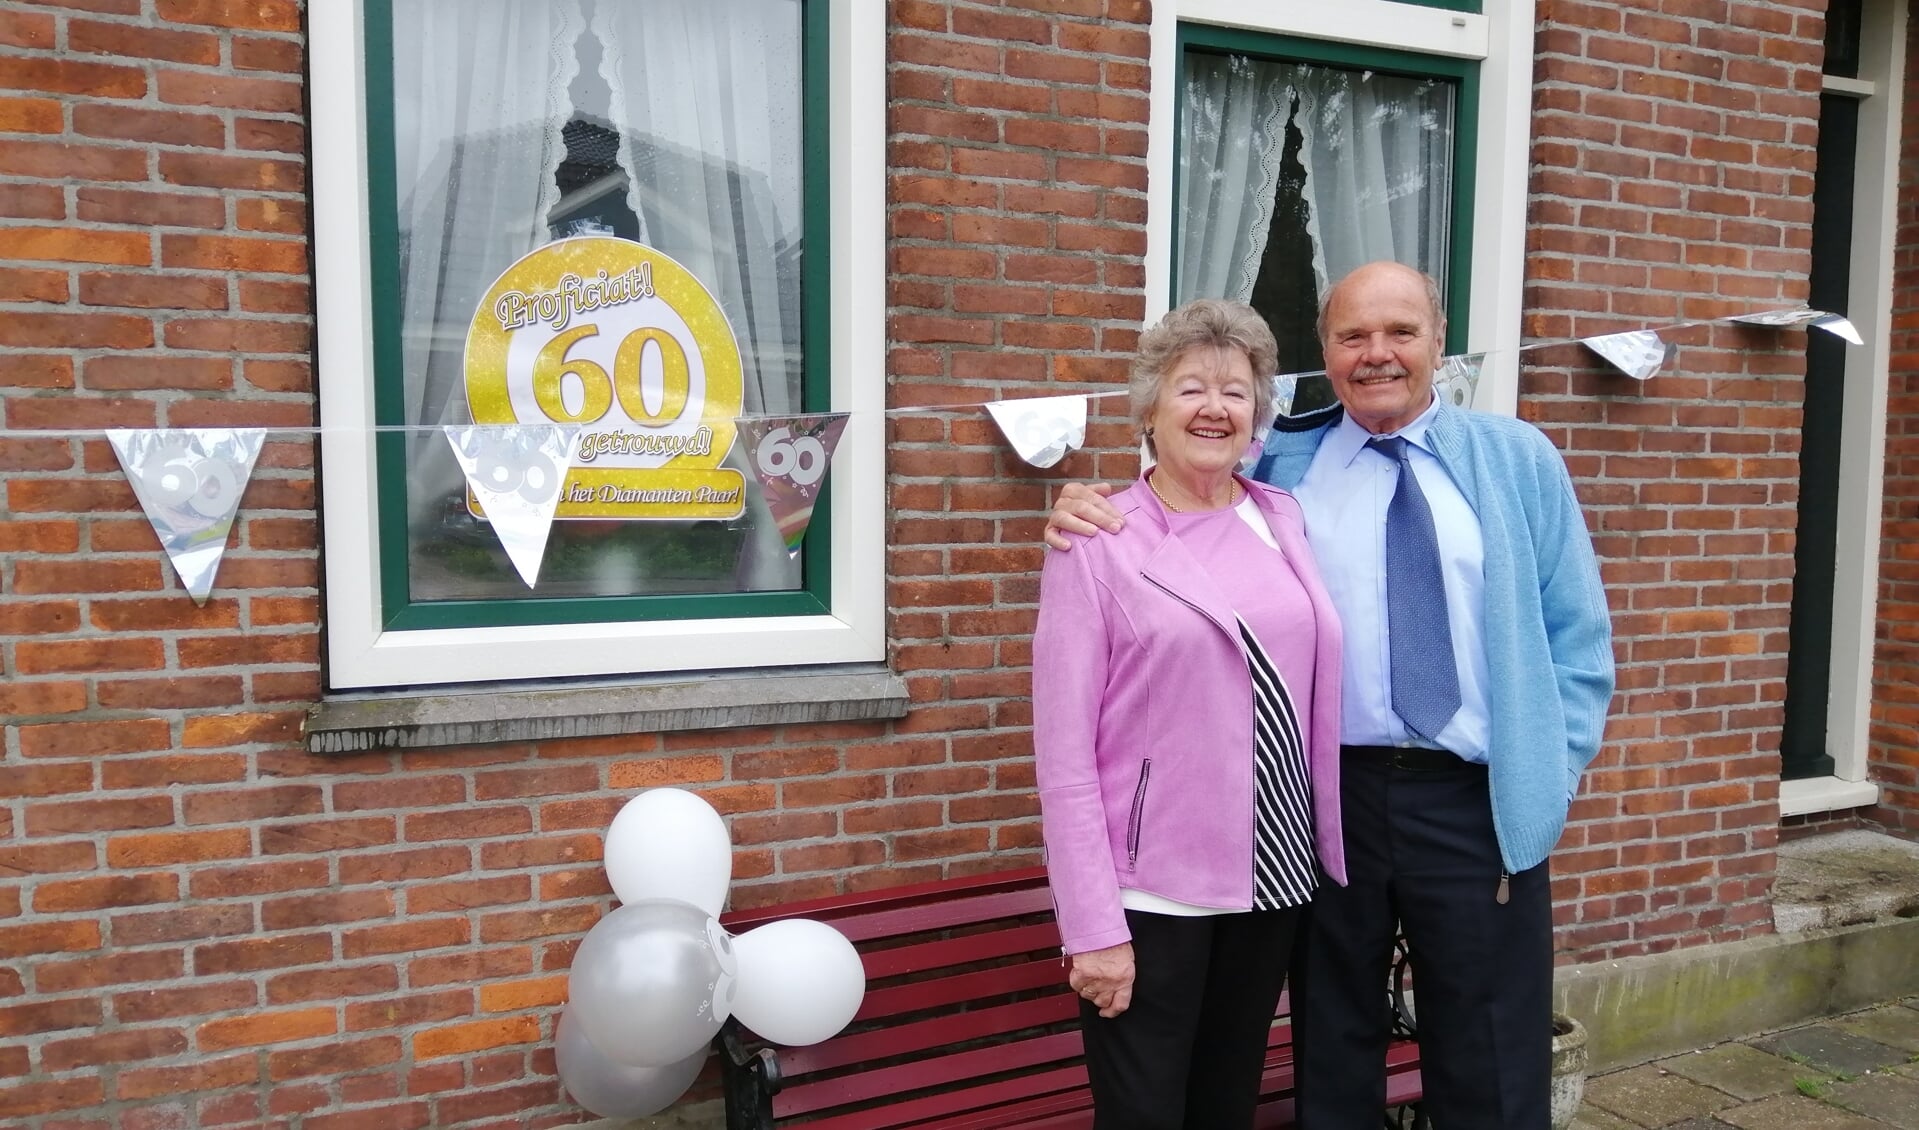 Reny en Bob Oudkerk Pool zijn ooit verhuisd van Amsterdam naar Landsmeer.